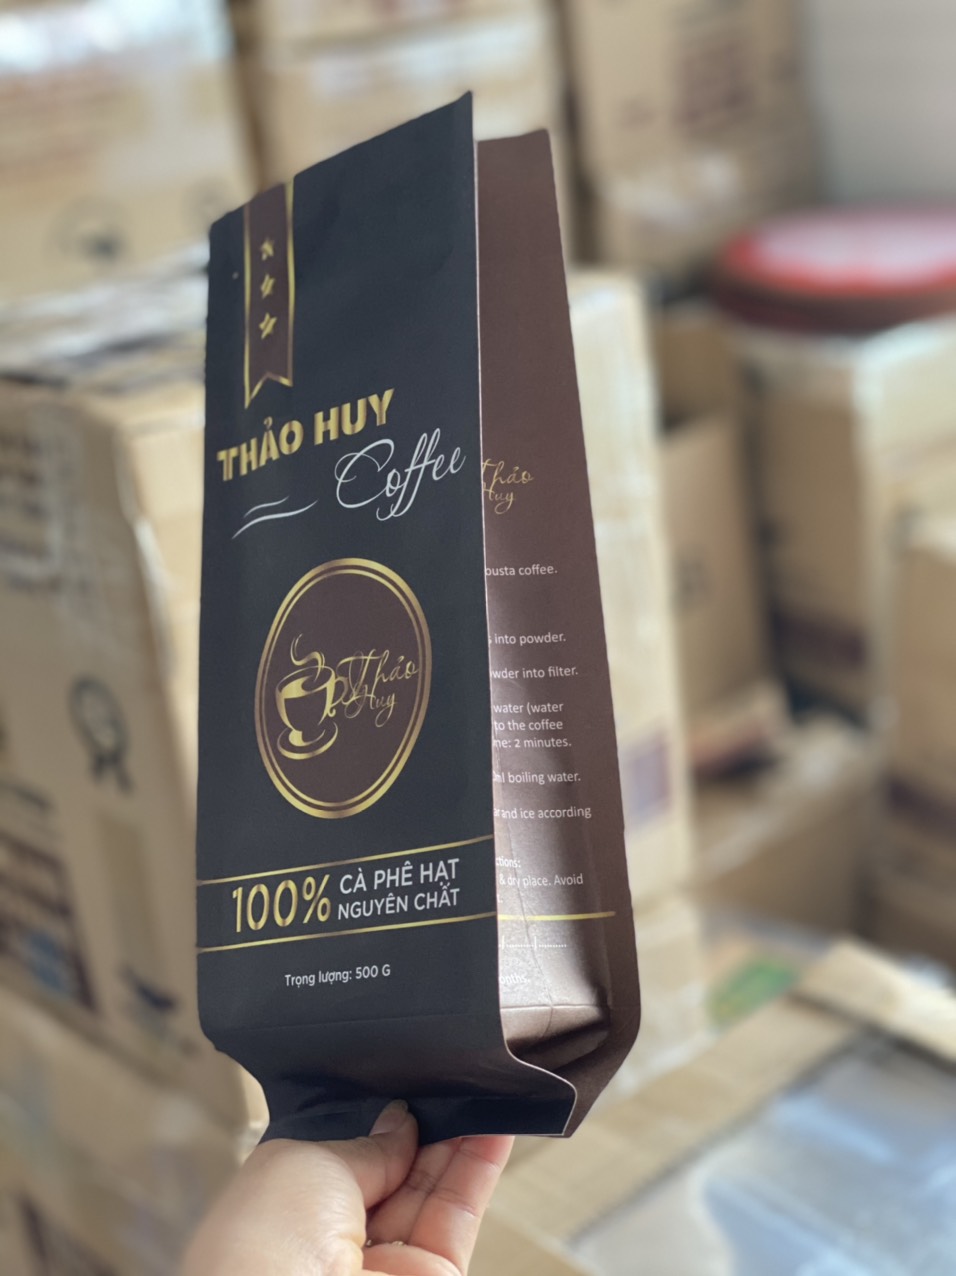 Sử dụng in túi giấy đựng cà phê hiện nay giúp quảng bá thương hiệu sản phẩm